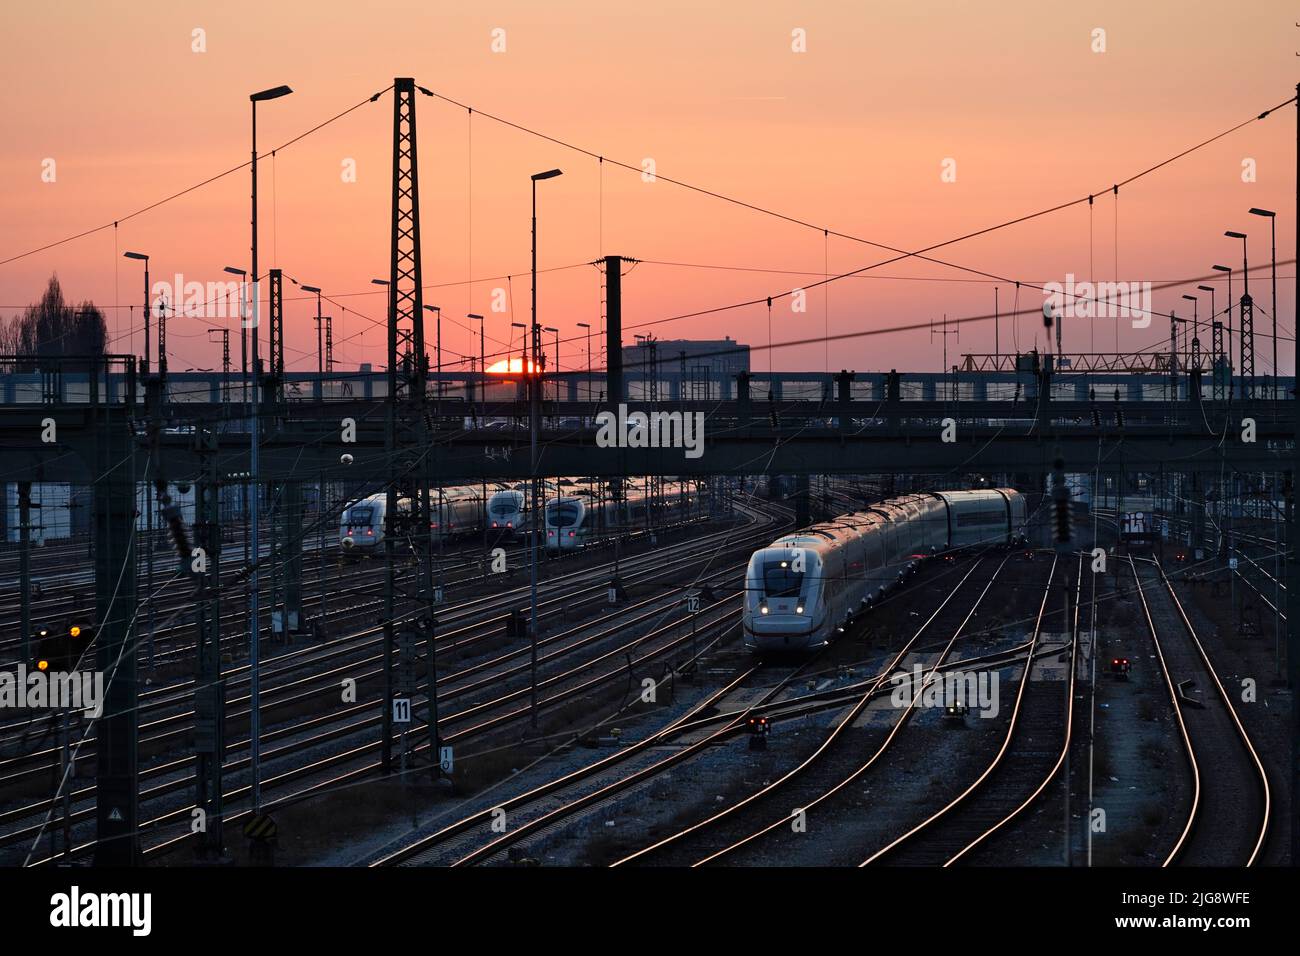 Germany, Bavaria, Munich, main station, Hackerbrücke, tracks, ICE, evening, sunset Stock Photo